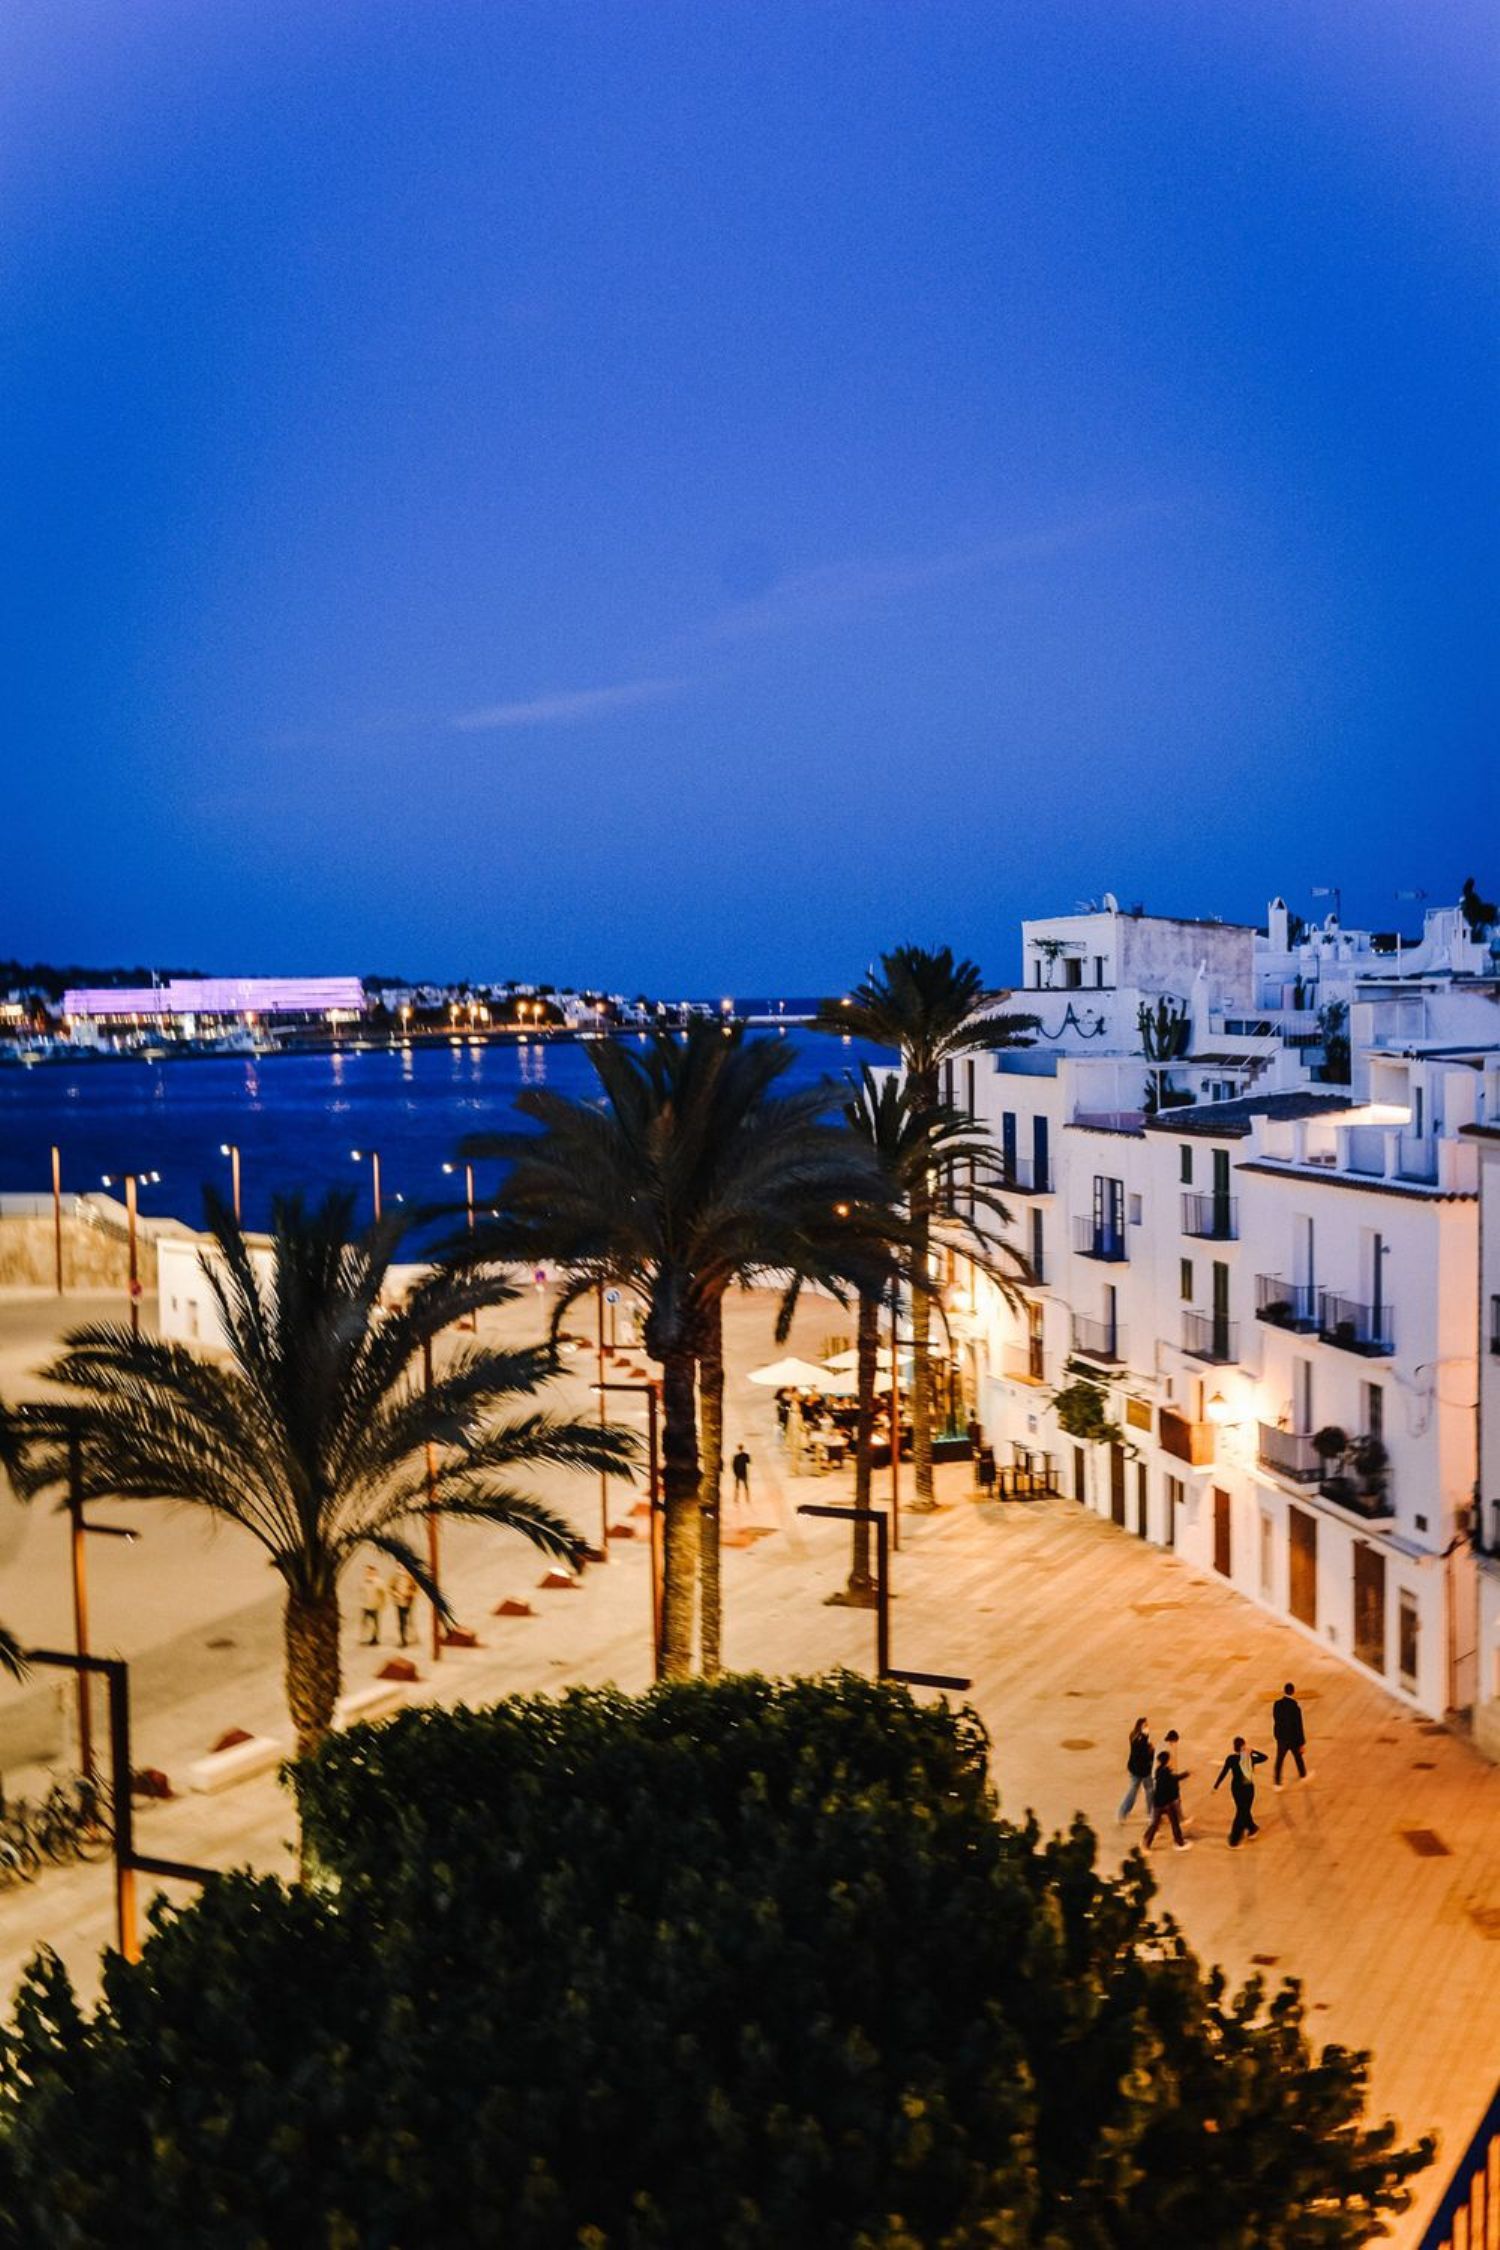 Piso en venta en primera línea de mar en Ibiza